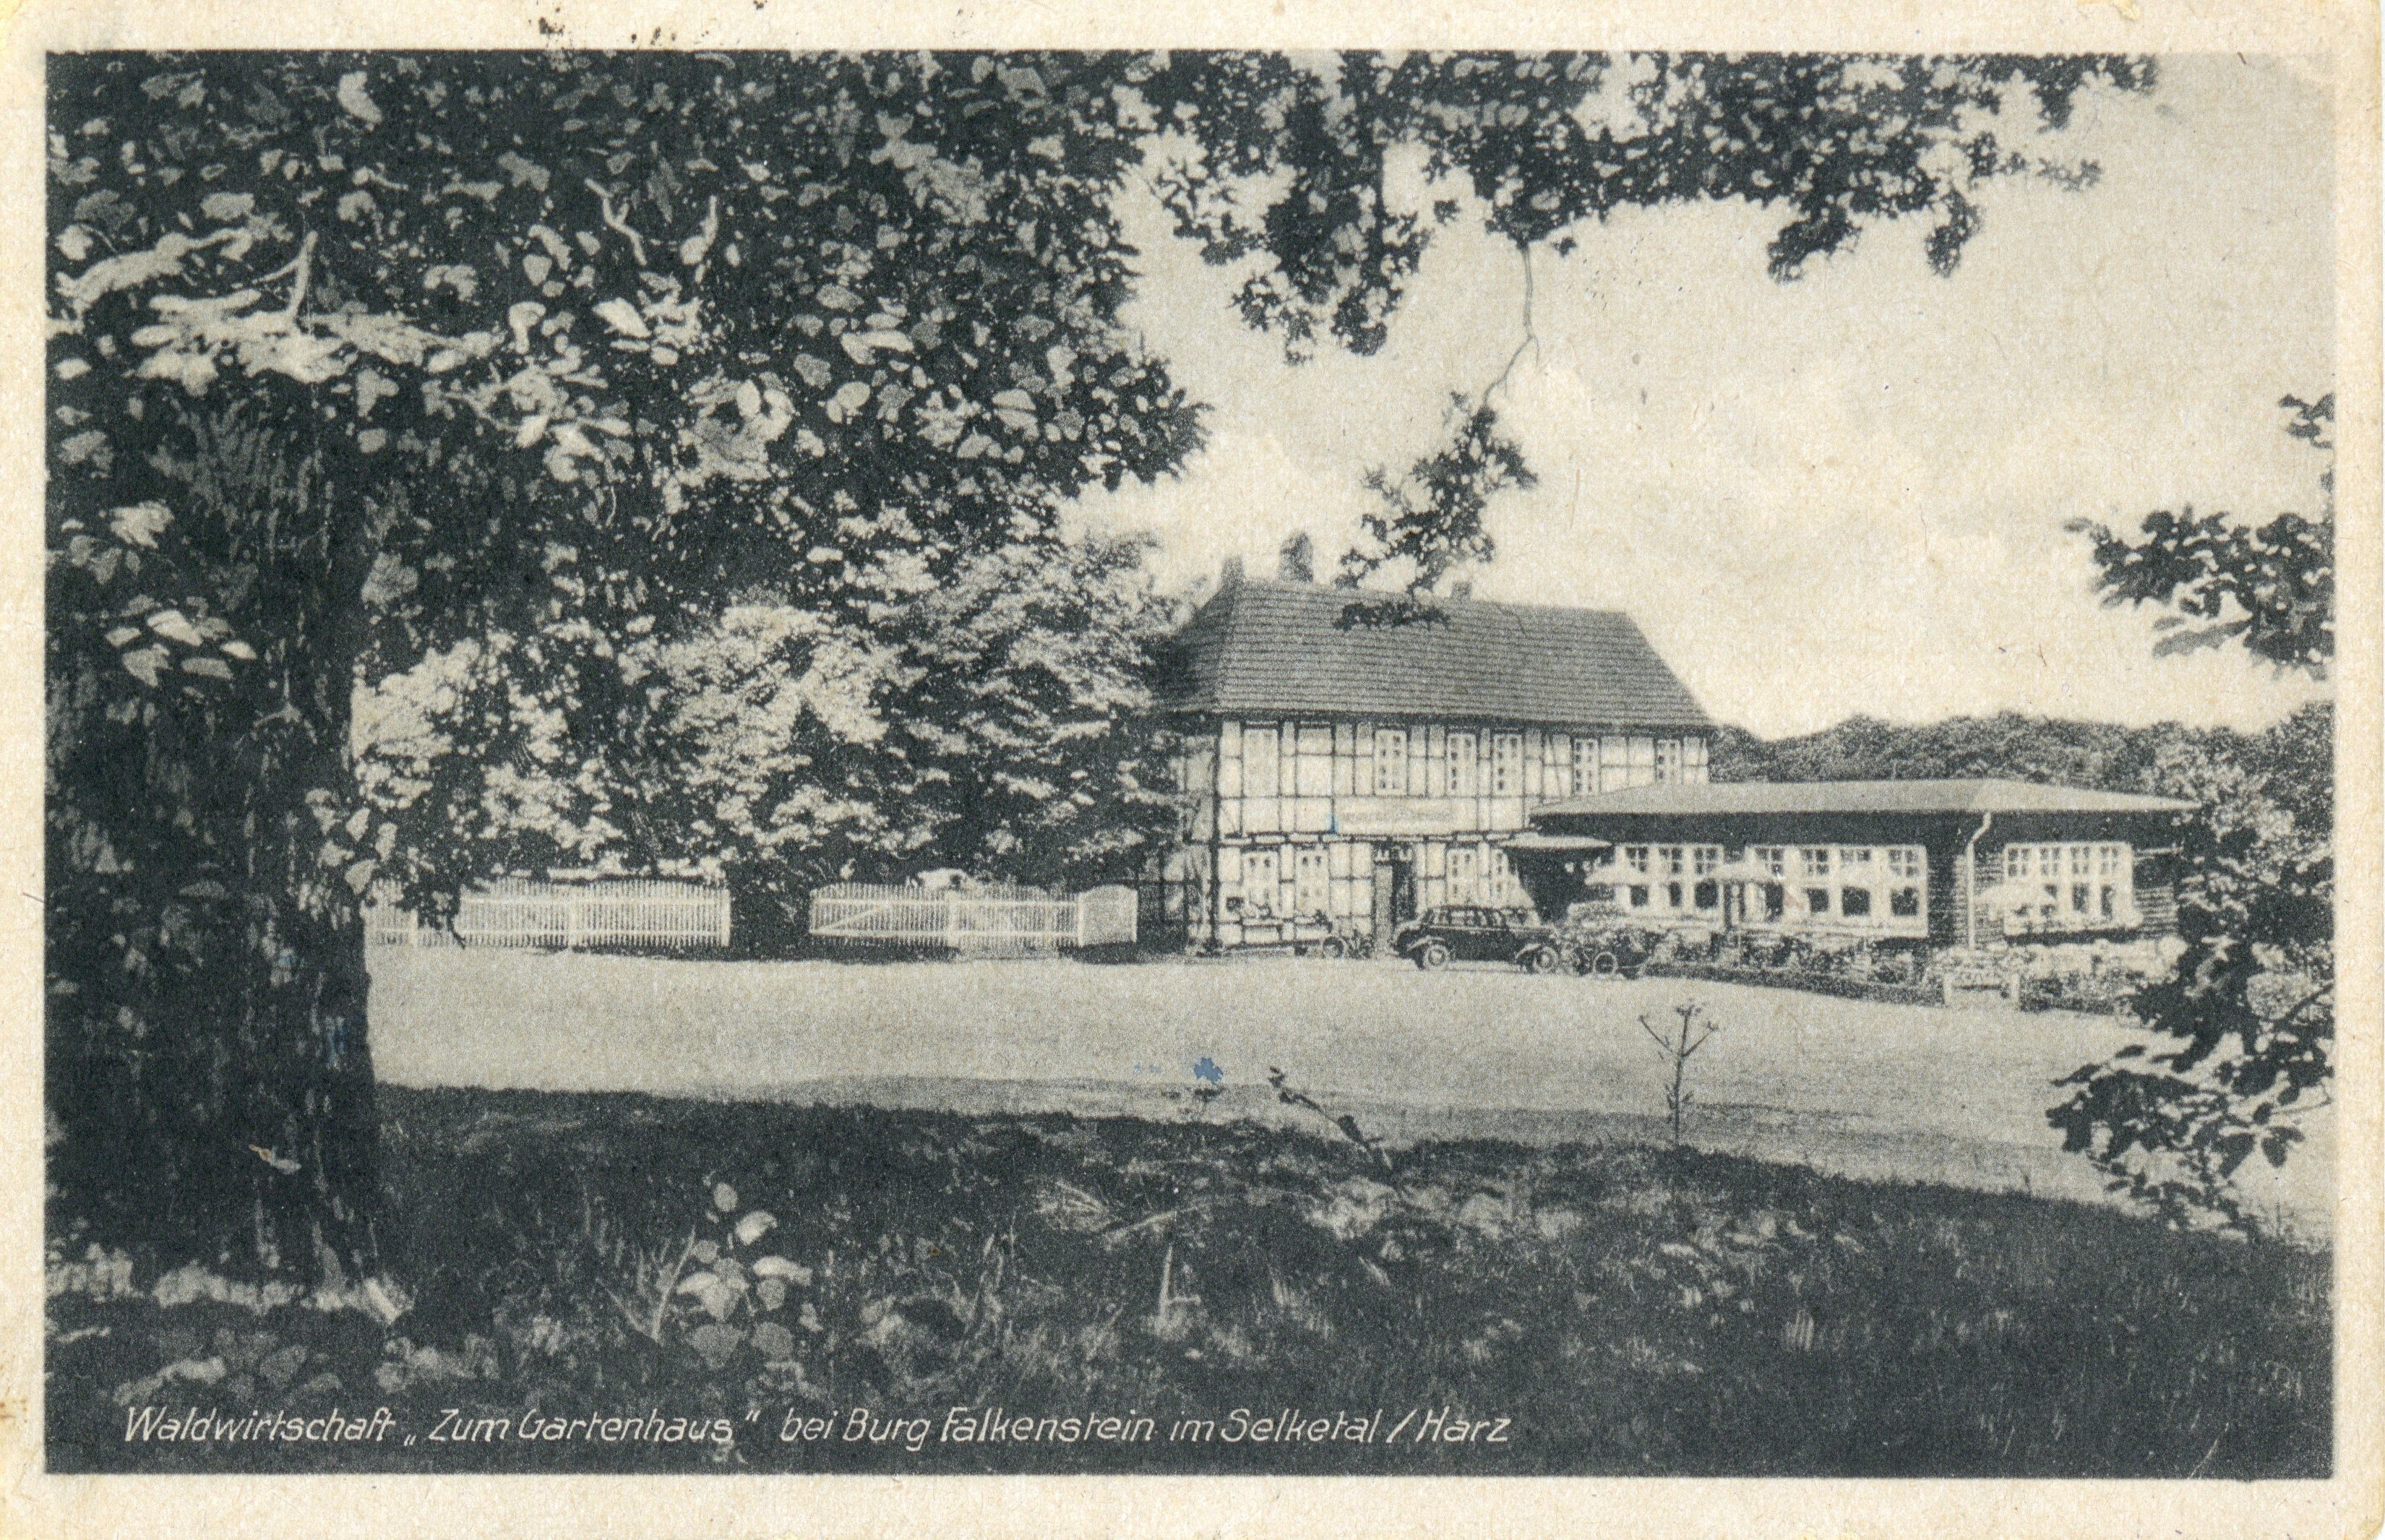 Ansichtskarte: Waldwirtschaft "Zum Gartenhaus" bei Burg Falkenstein im Selketal / Harz (Kulturstiftung Sachsen-Anhalt CC BY-NC-SA)